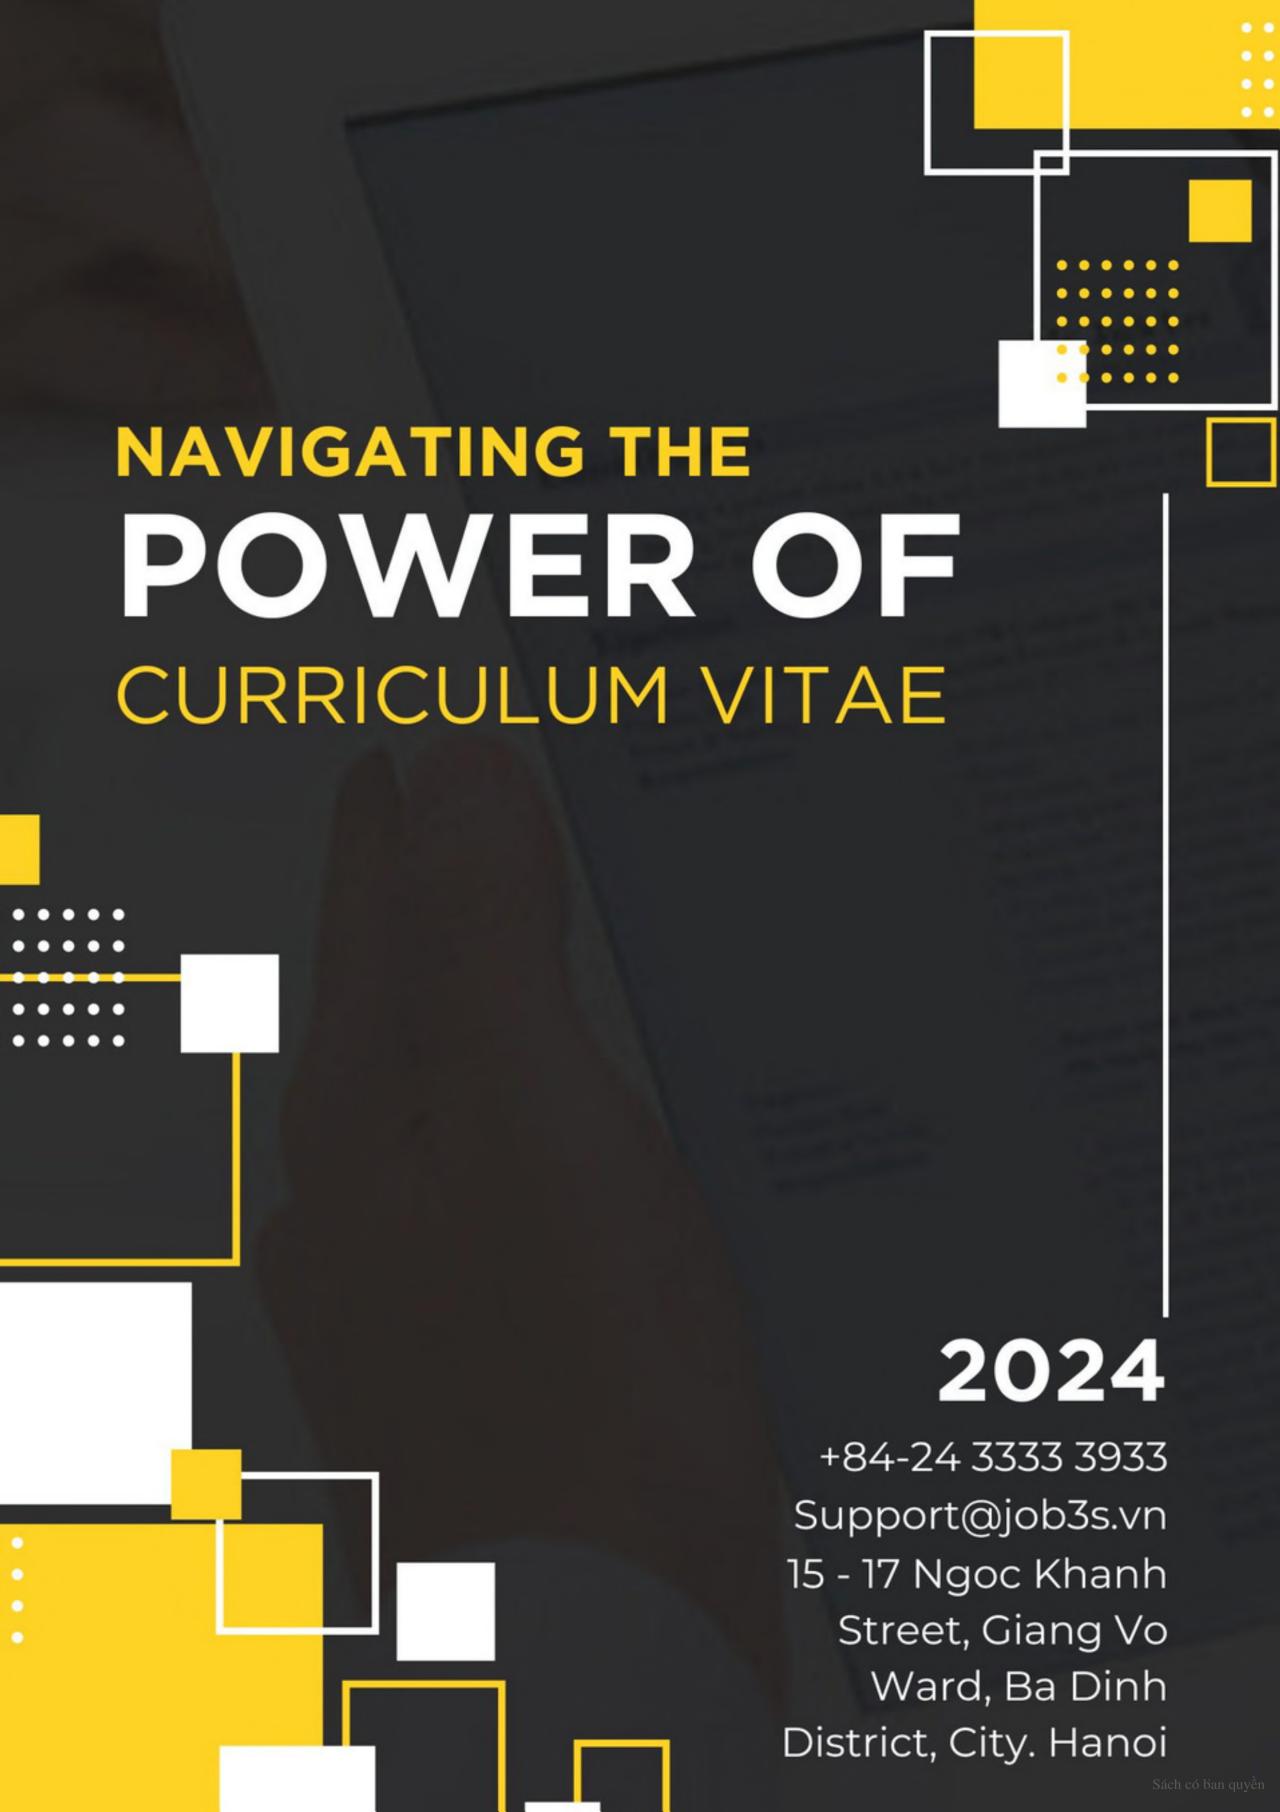 Cuốn sách “Navigating the Power of Curriculum Vitae” là cẩm nang cần thết cho ứng viên tìm việc